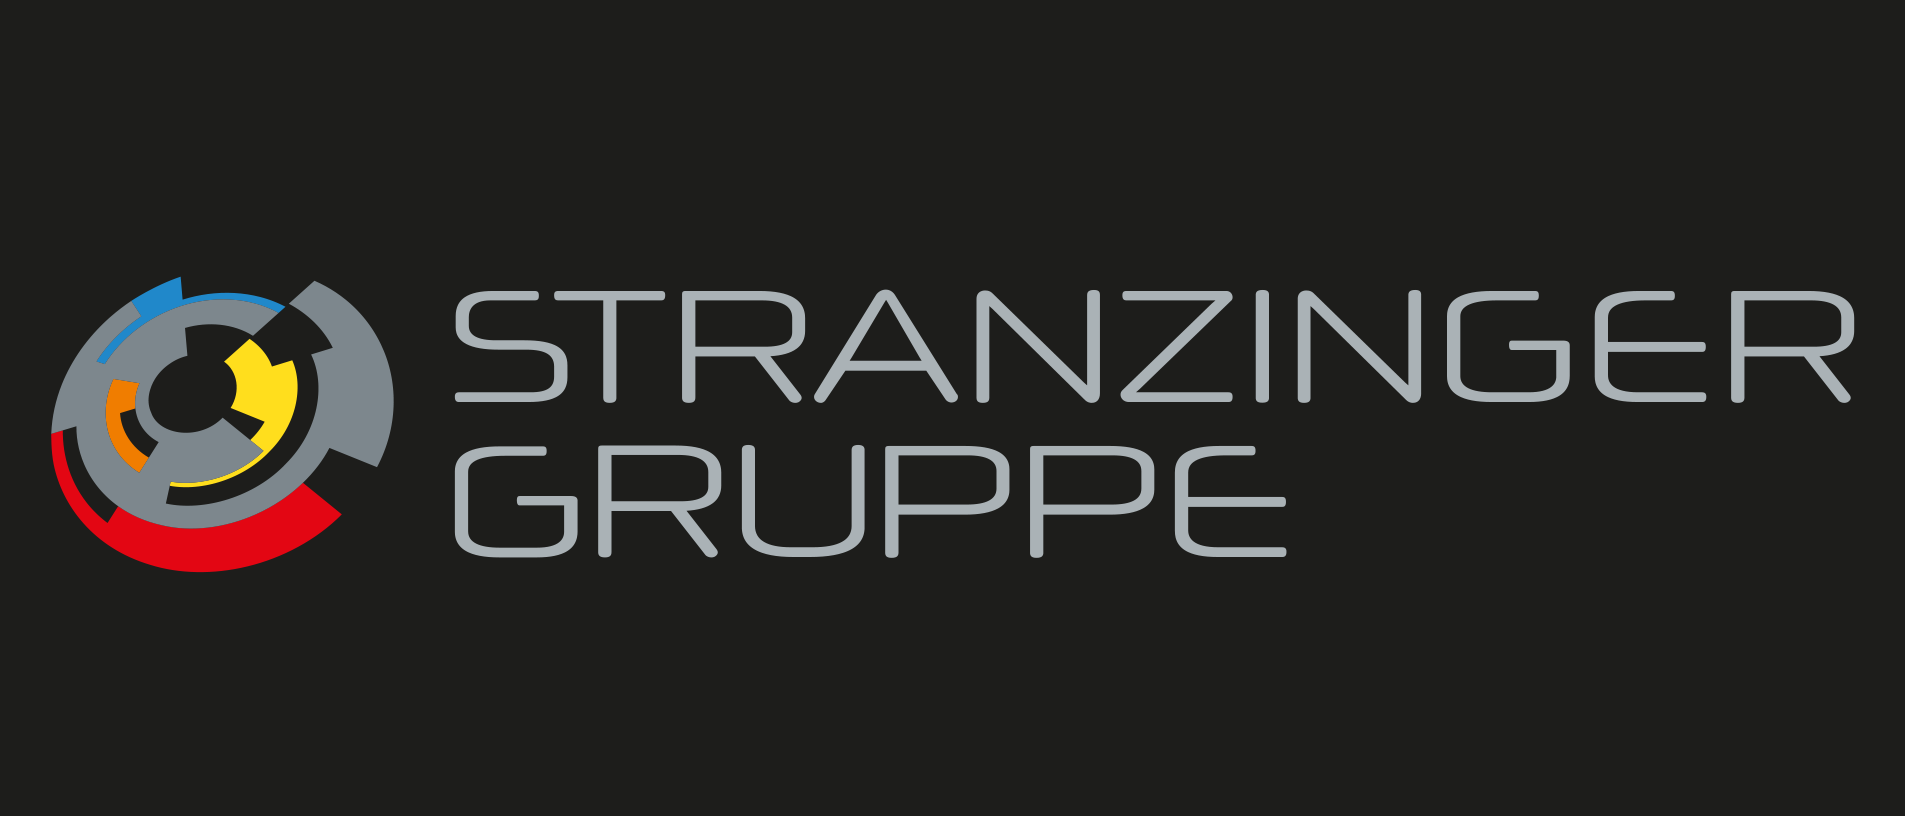 Stranzinger Gruppe: Karrierechancen, Kontaktdaten, Fotos | karriere.at